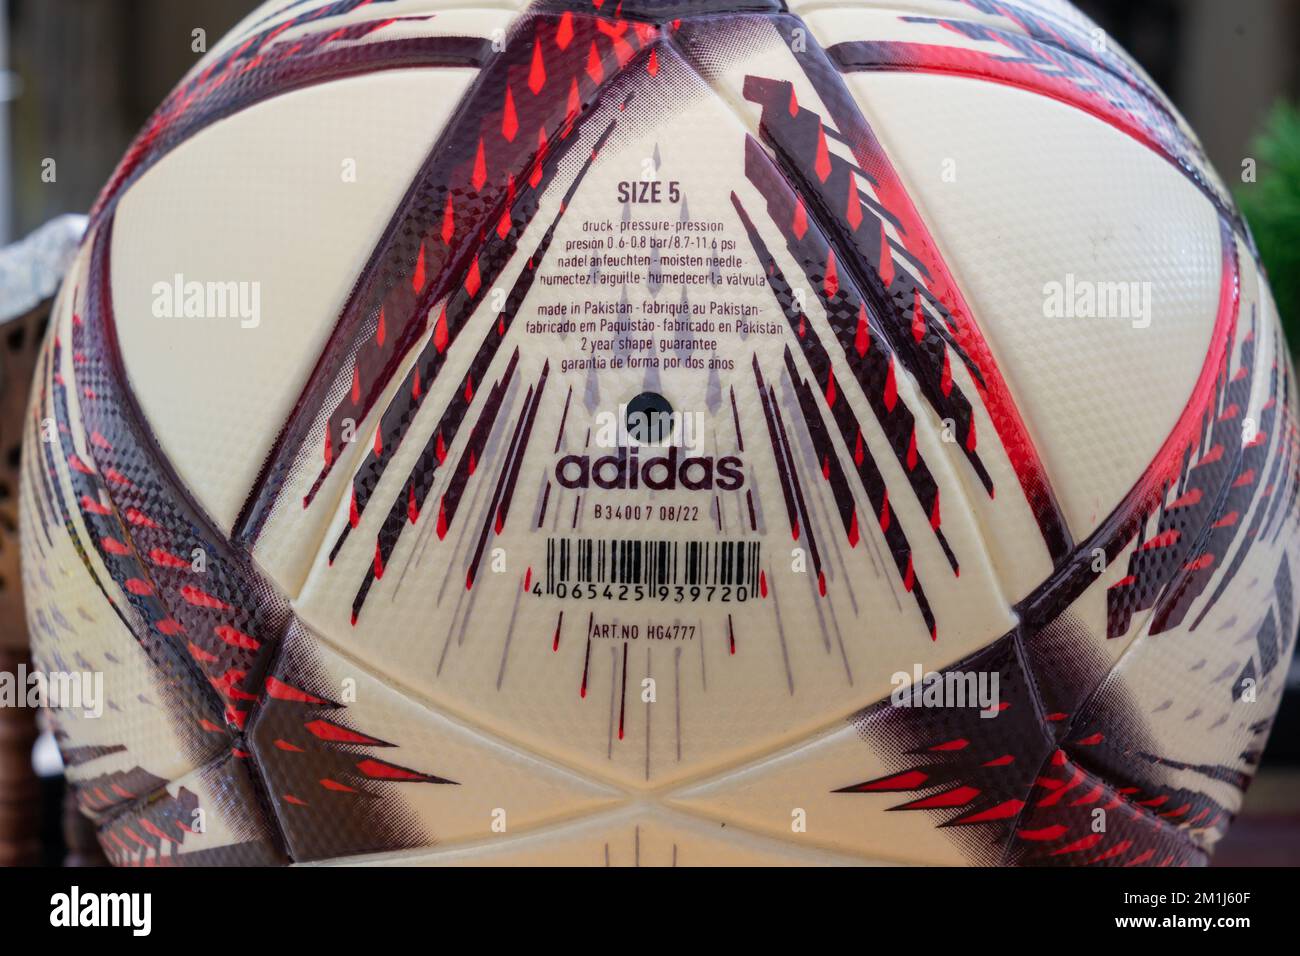 Primo piano della palla adidas al Hilm, che è la palla ufficiale utilizzata nella Coppa del mondo FIFA 2022 Qatar semifinale e finale. Foto Stock